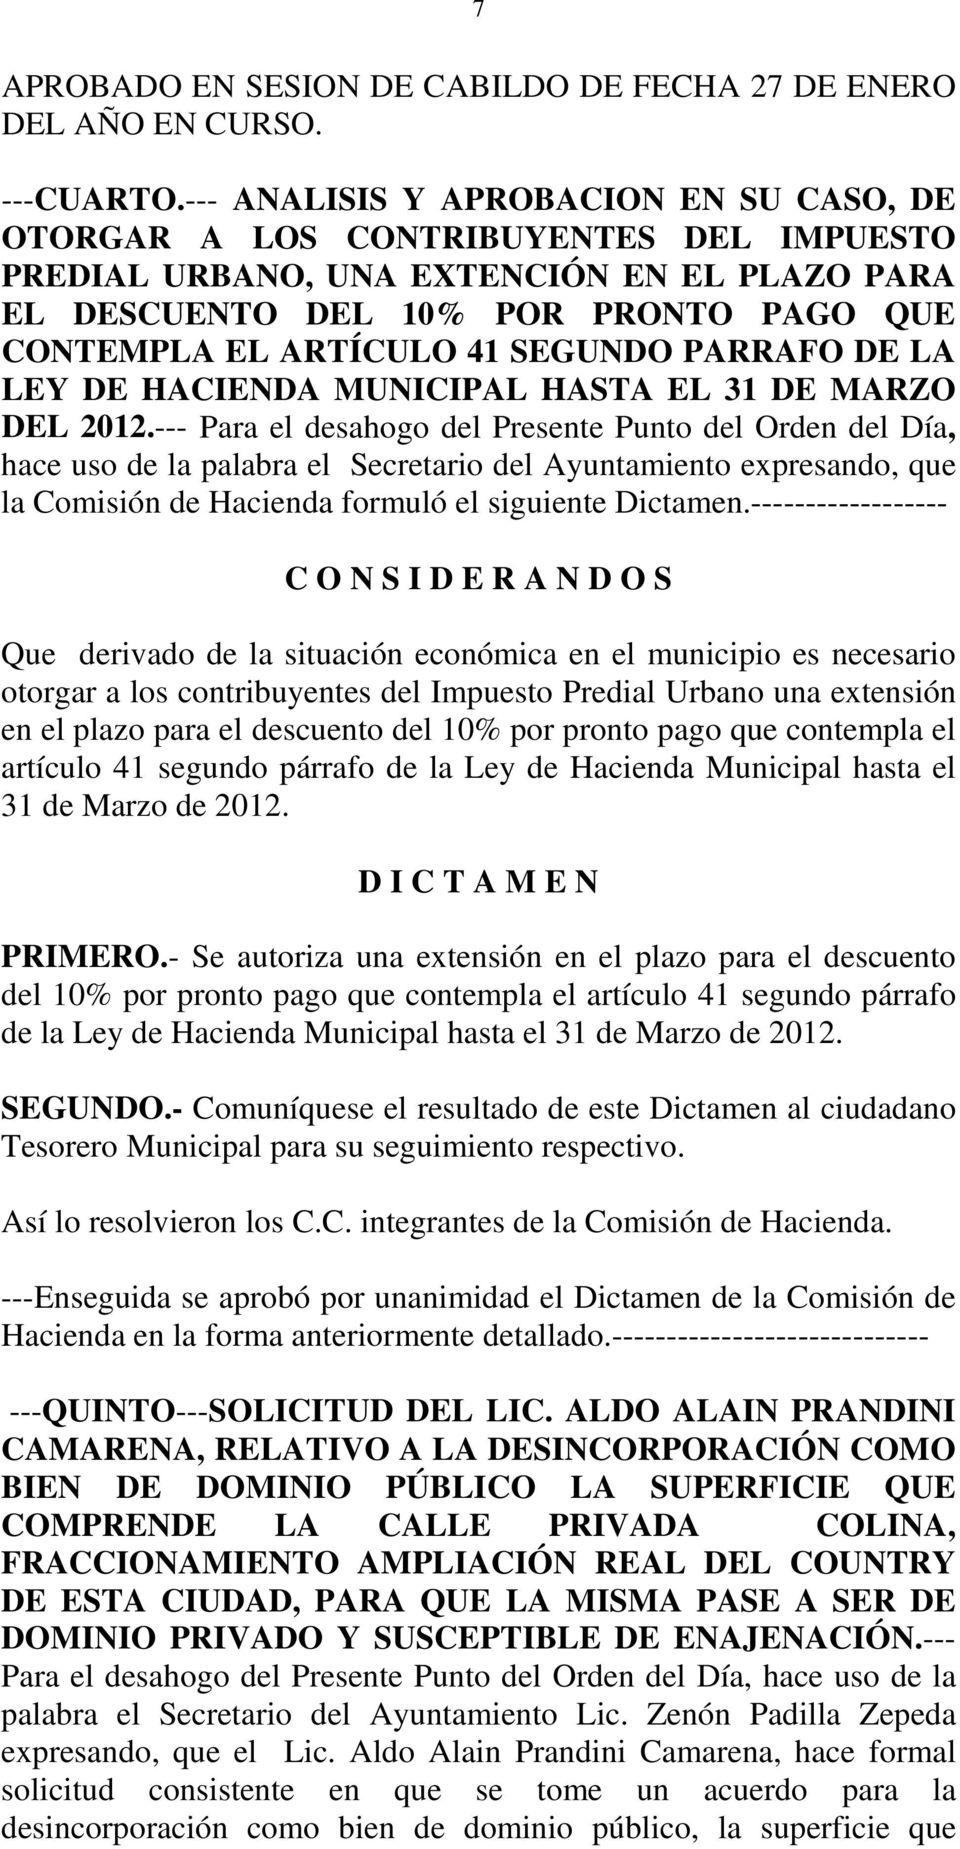 SEGUNDO PARRAFO DE LA LEY DE HACIENDA MUNICIPAL HASTA EL 31 DE MARZO DEL 2012.